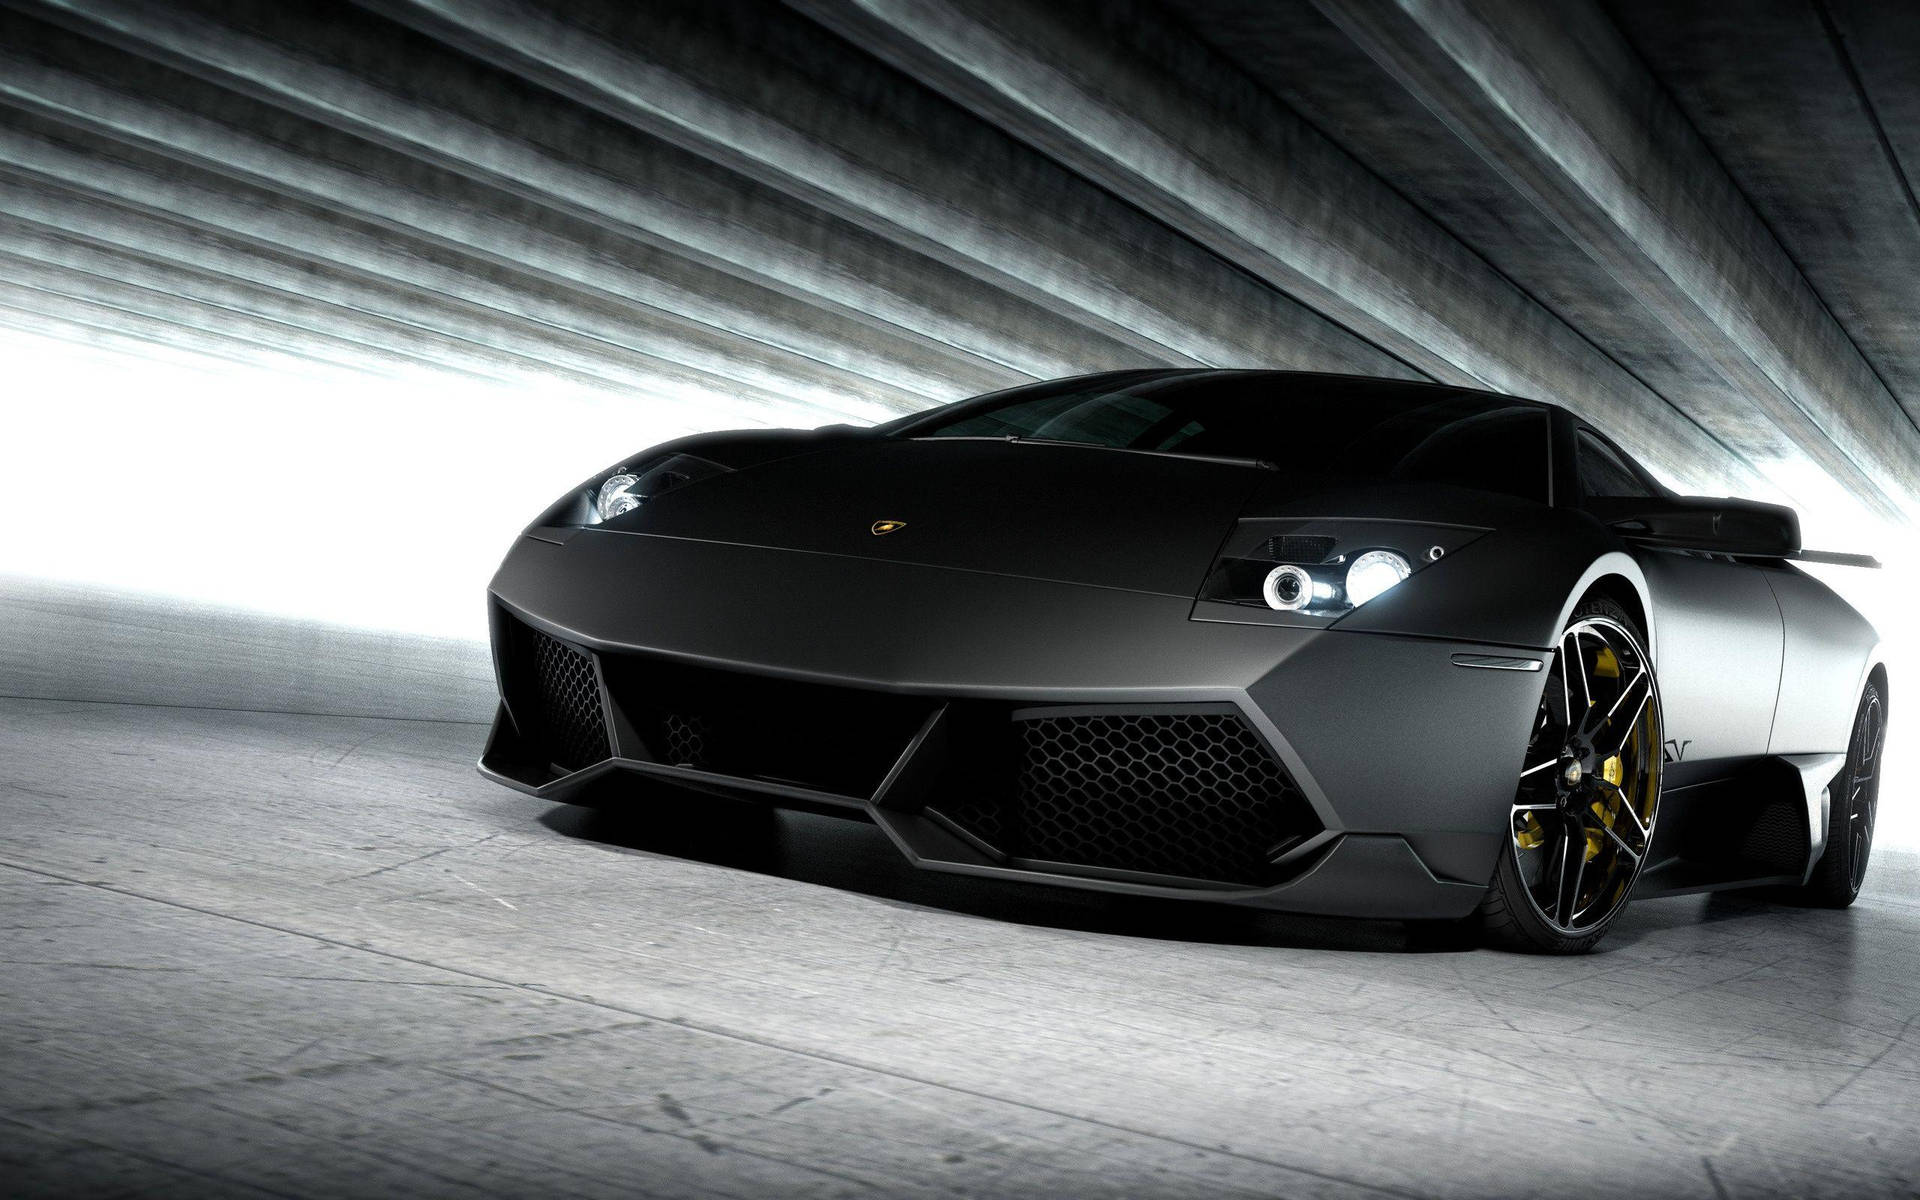 Awesome Black Lamborghini Wallpaper